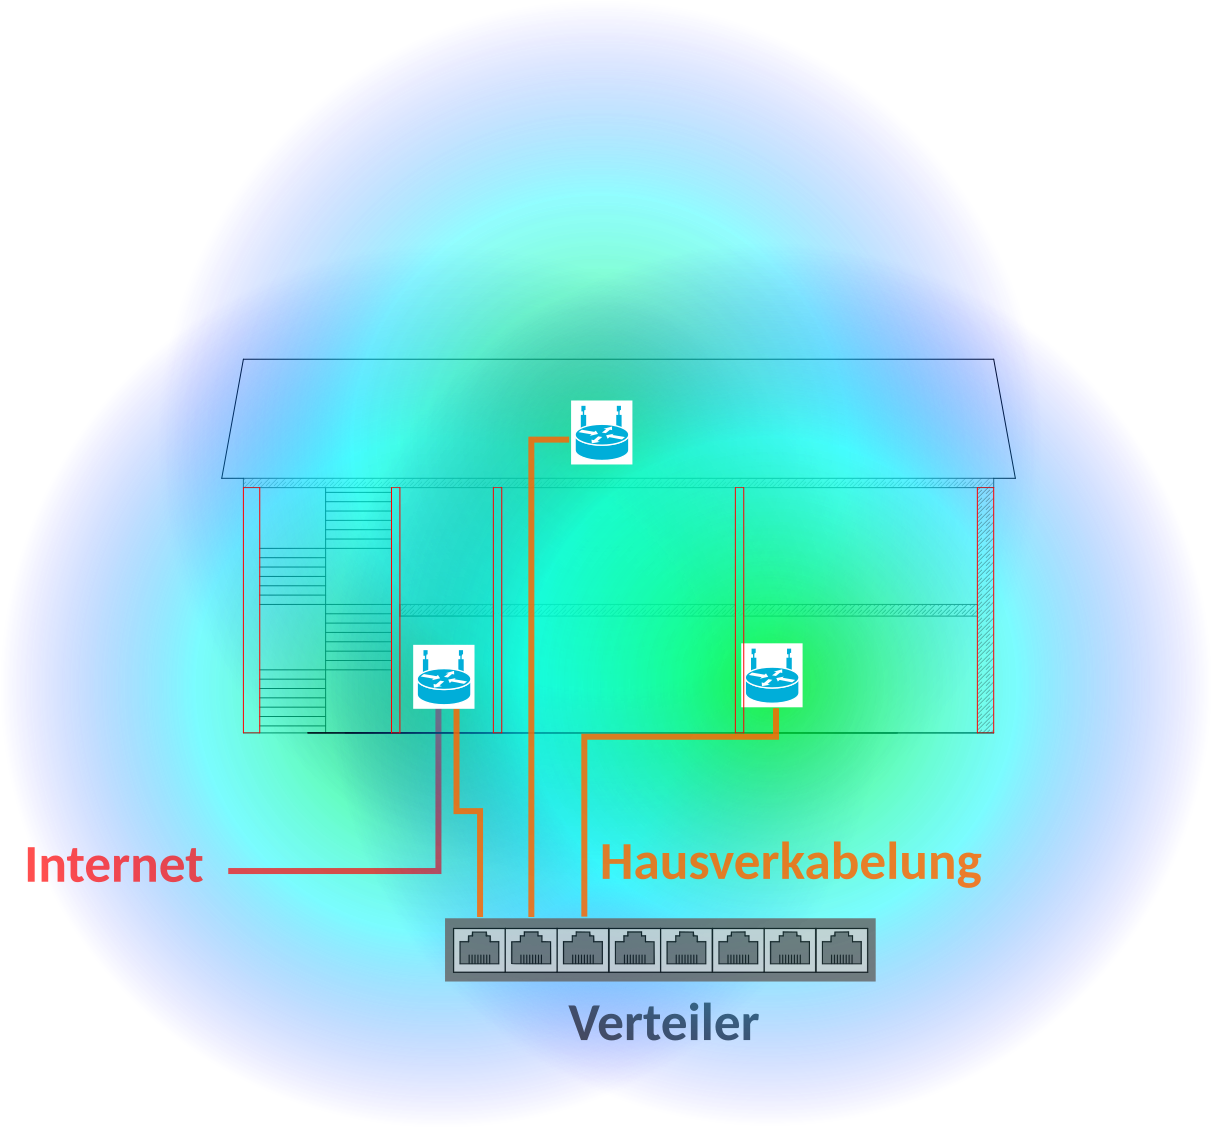 Schematische Abbildung eines zweistöckigen Hauses mit Netzwerkverteiler im Keller und 3 WLAN-Routern, deren Funkreichweite als Kreis eingezeichnet ist.